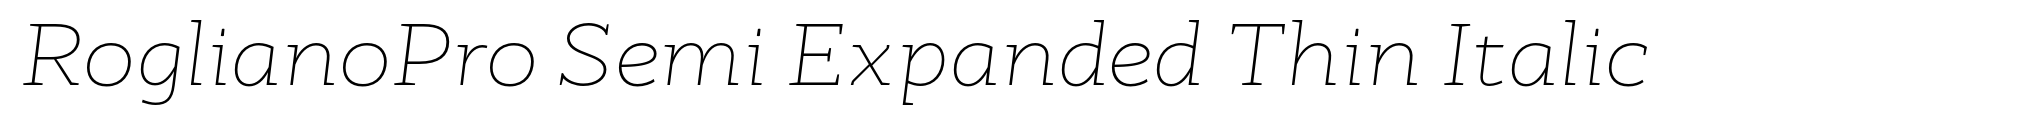 RoglianoPro Semi Expanded Thin Italic image